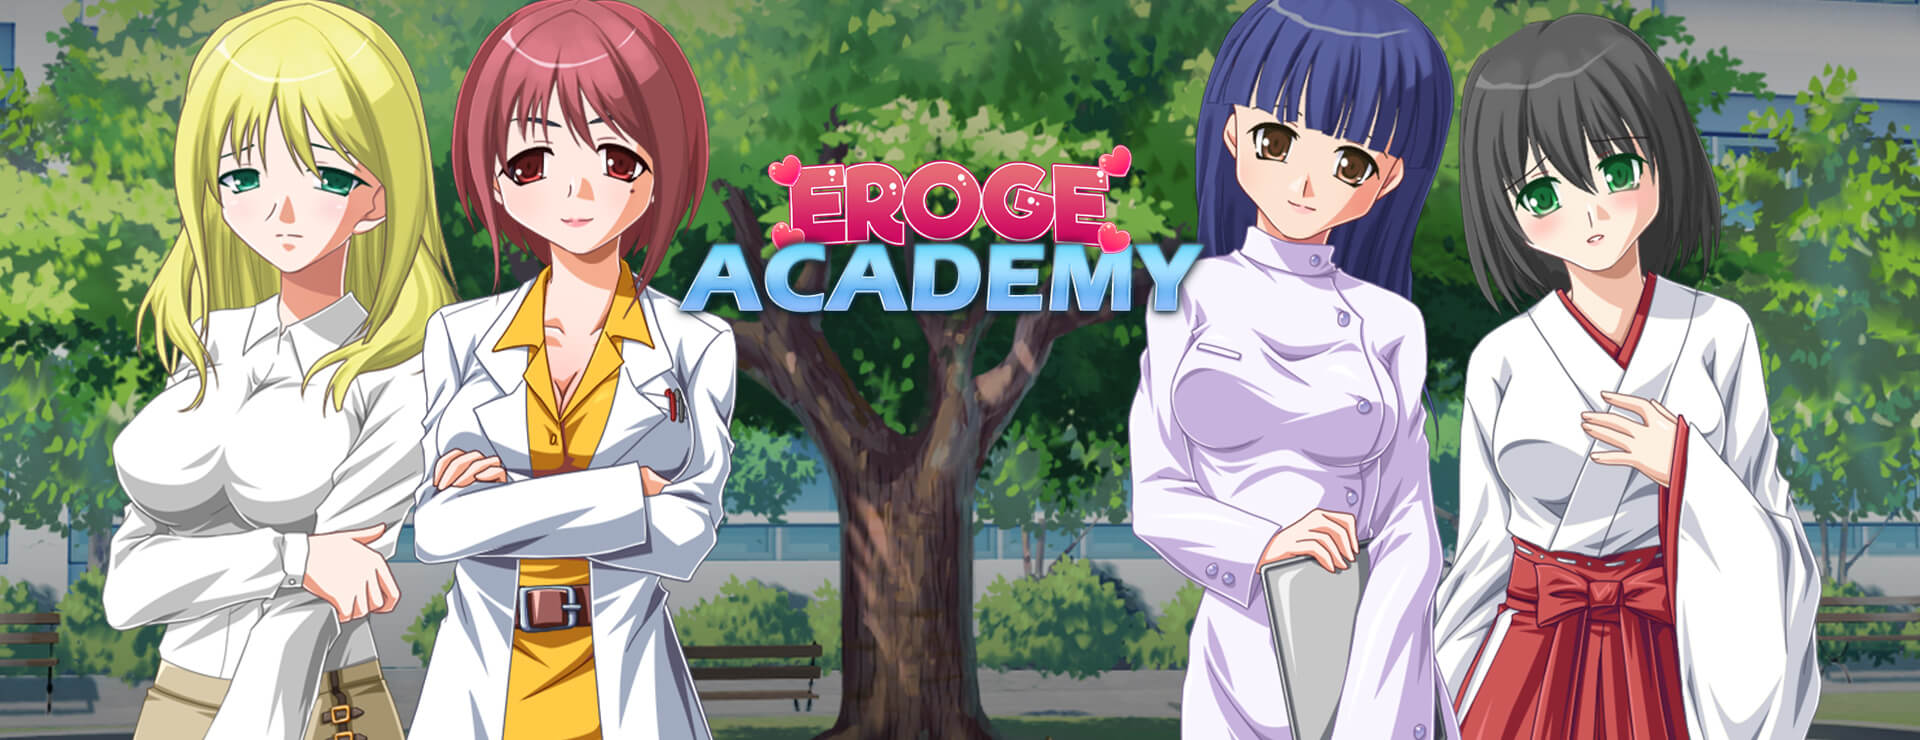 Eroge Academy - Japanisches Adventure Spiel